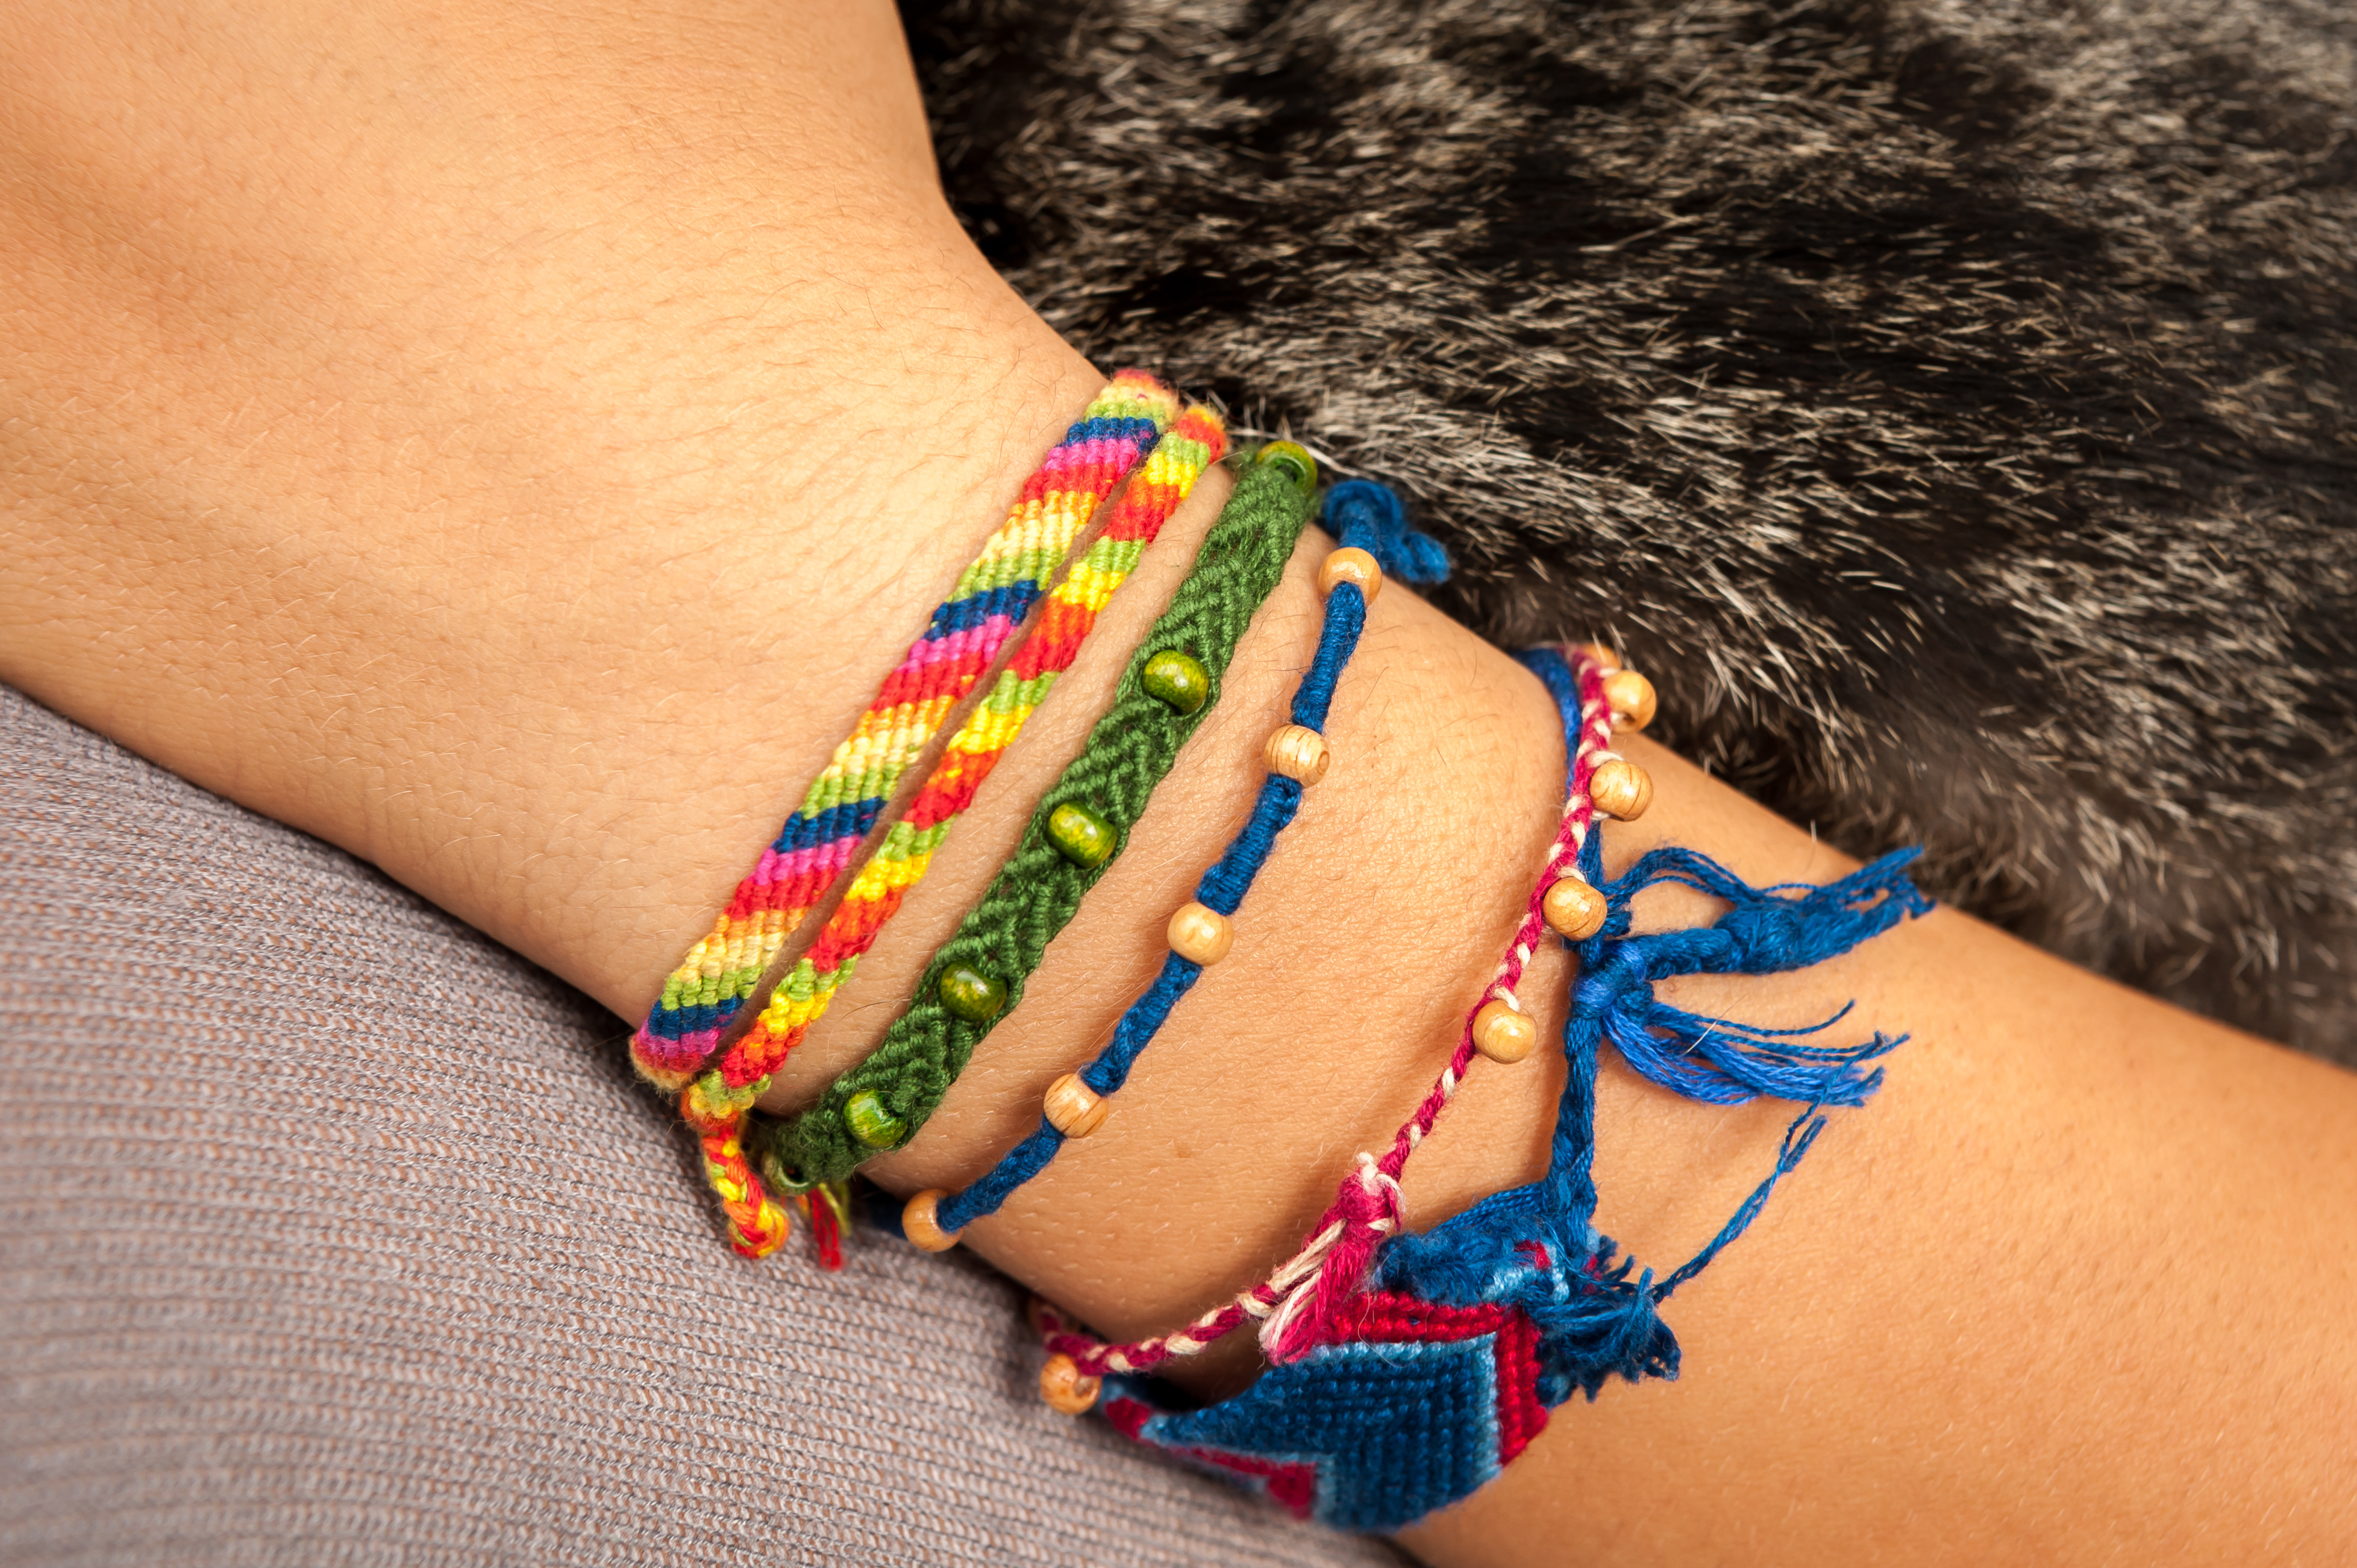 A lady wears several friendship bracelets on her wrist